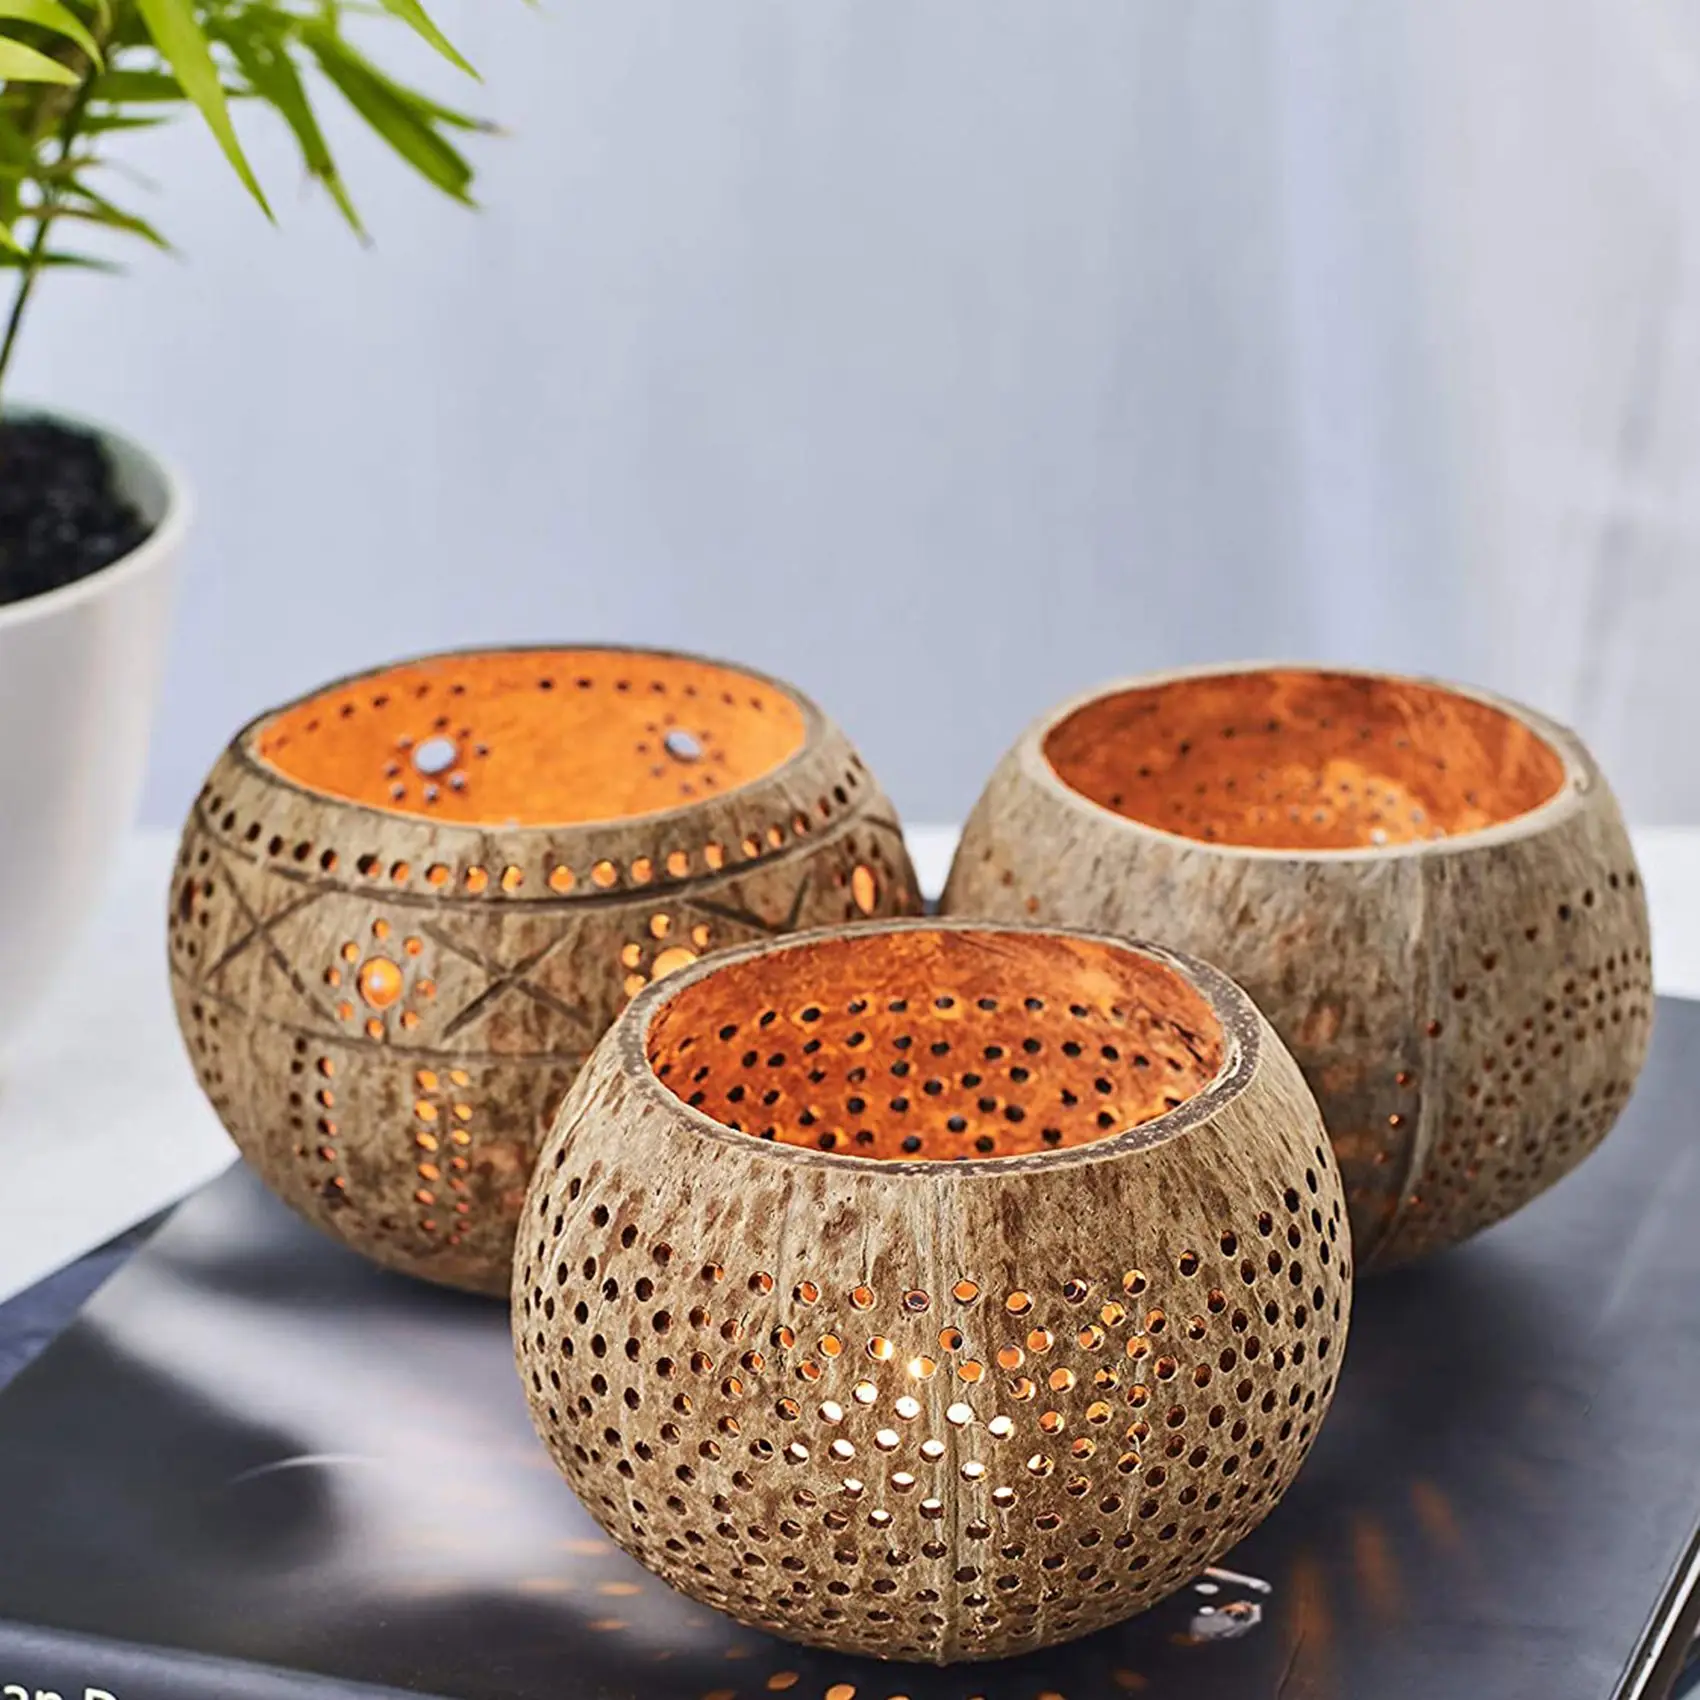 Дървени свещници от черупката на кокосов орех (комплект от 3 броя) със свещи Tealight с аромат на кокосов орех - Boho Декор, Свещници за обети